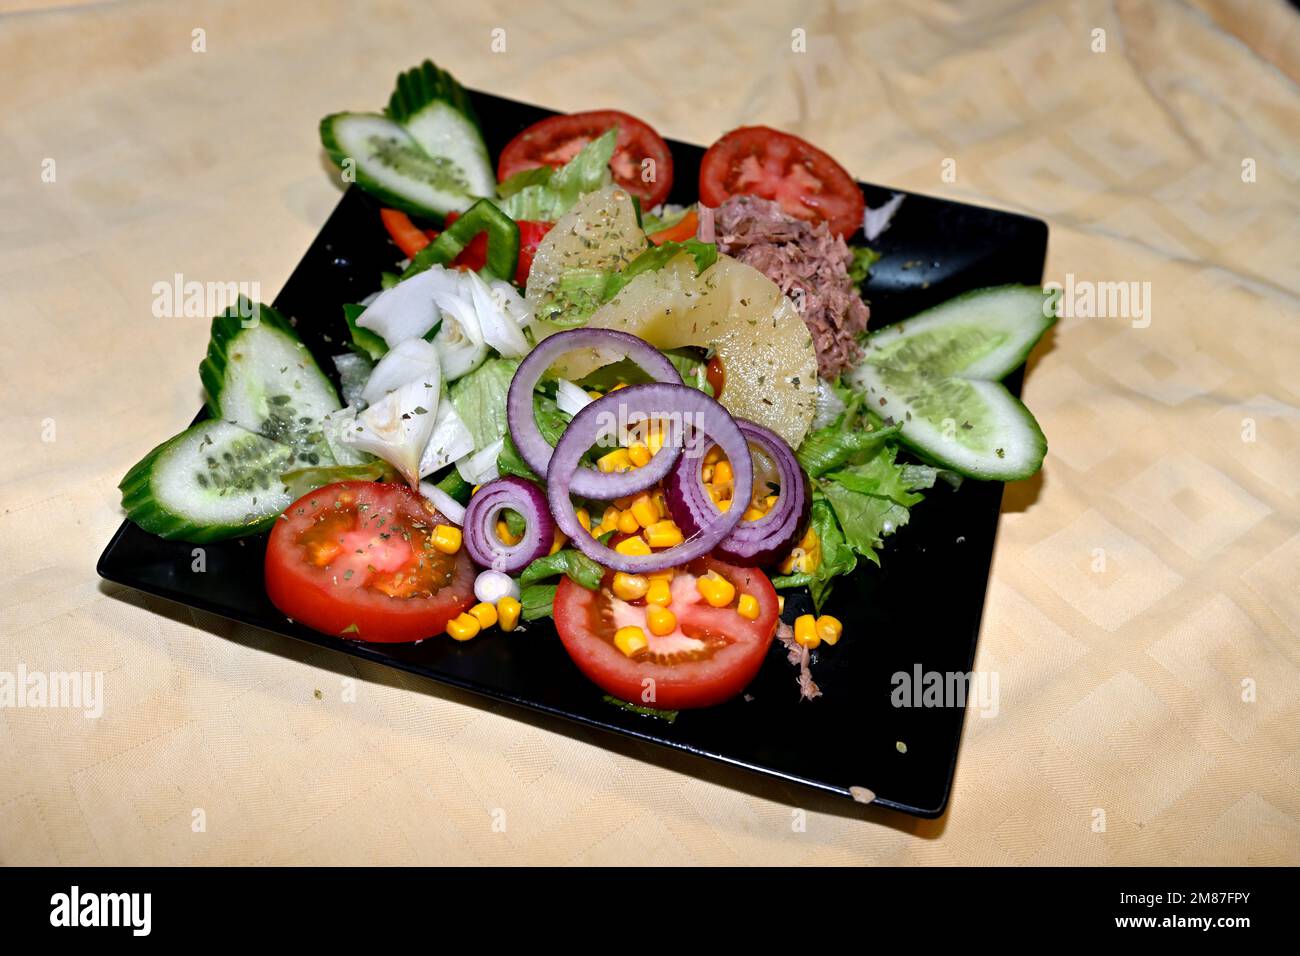 Assiette de salade mixte, tomate, concombre, oignon, poivron vert, maïs, ananas avec origan sur plaque carrée noire Banque D'Images